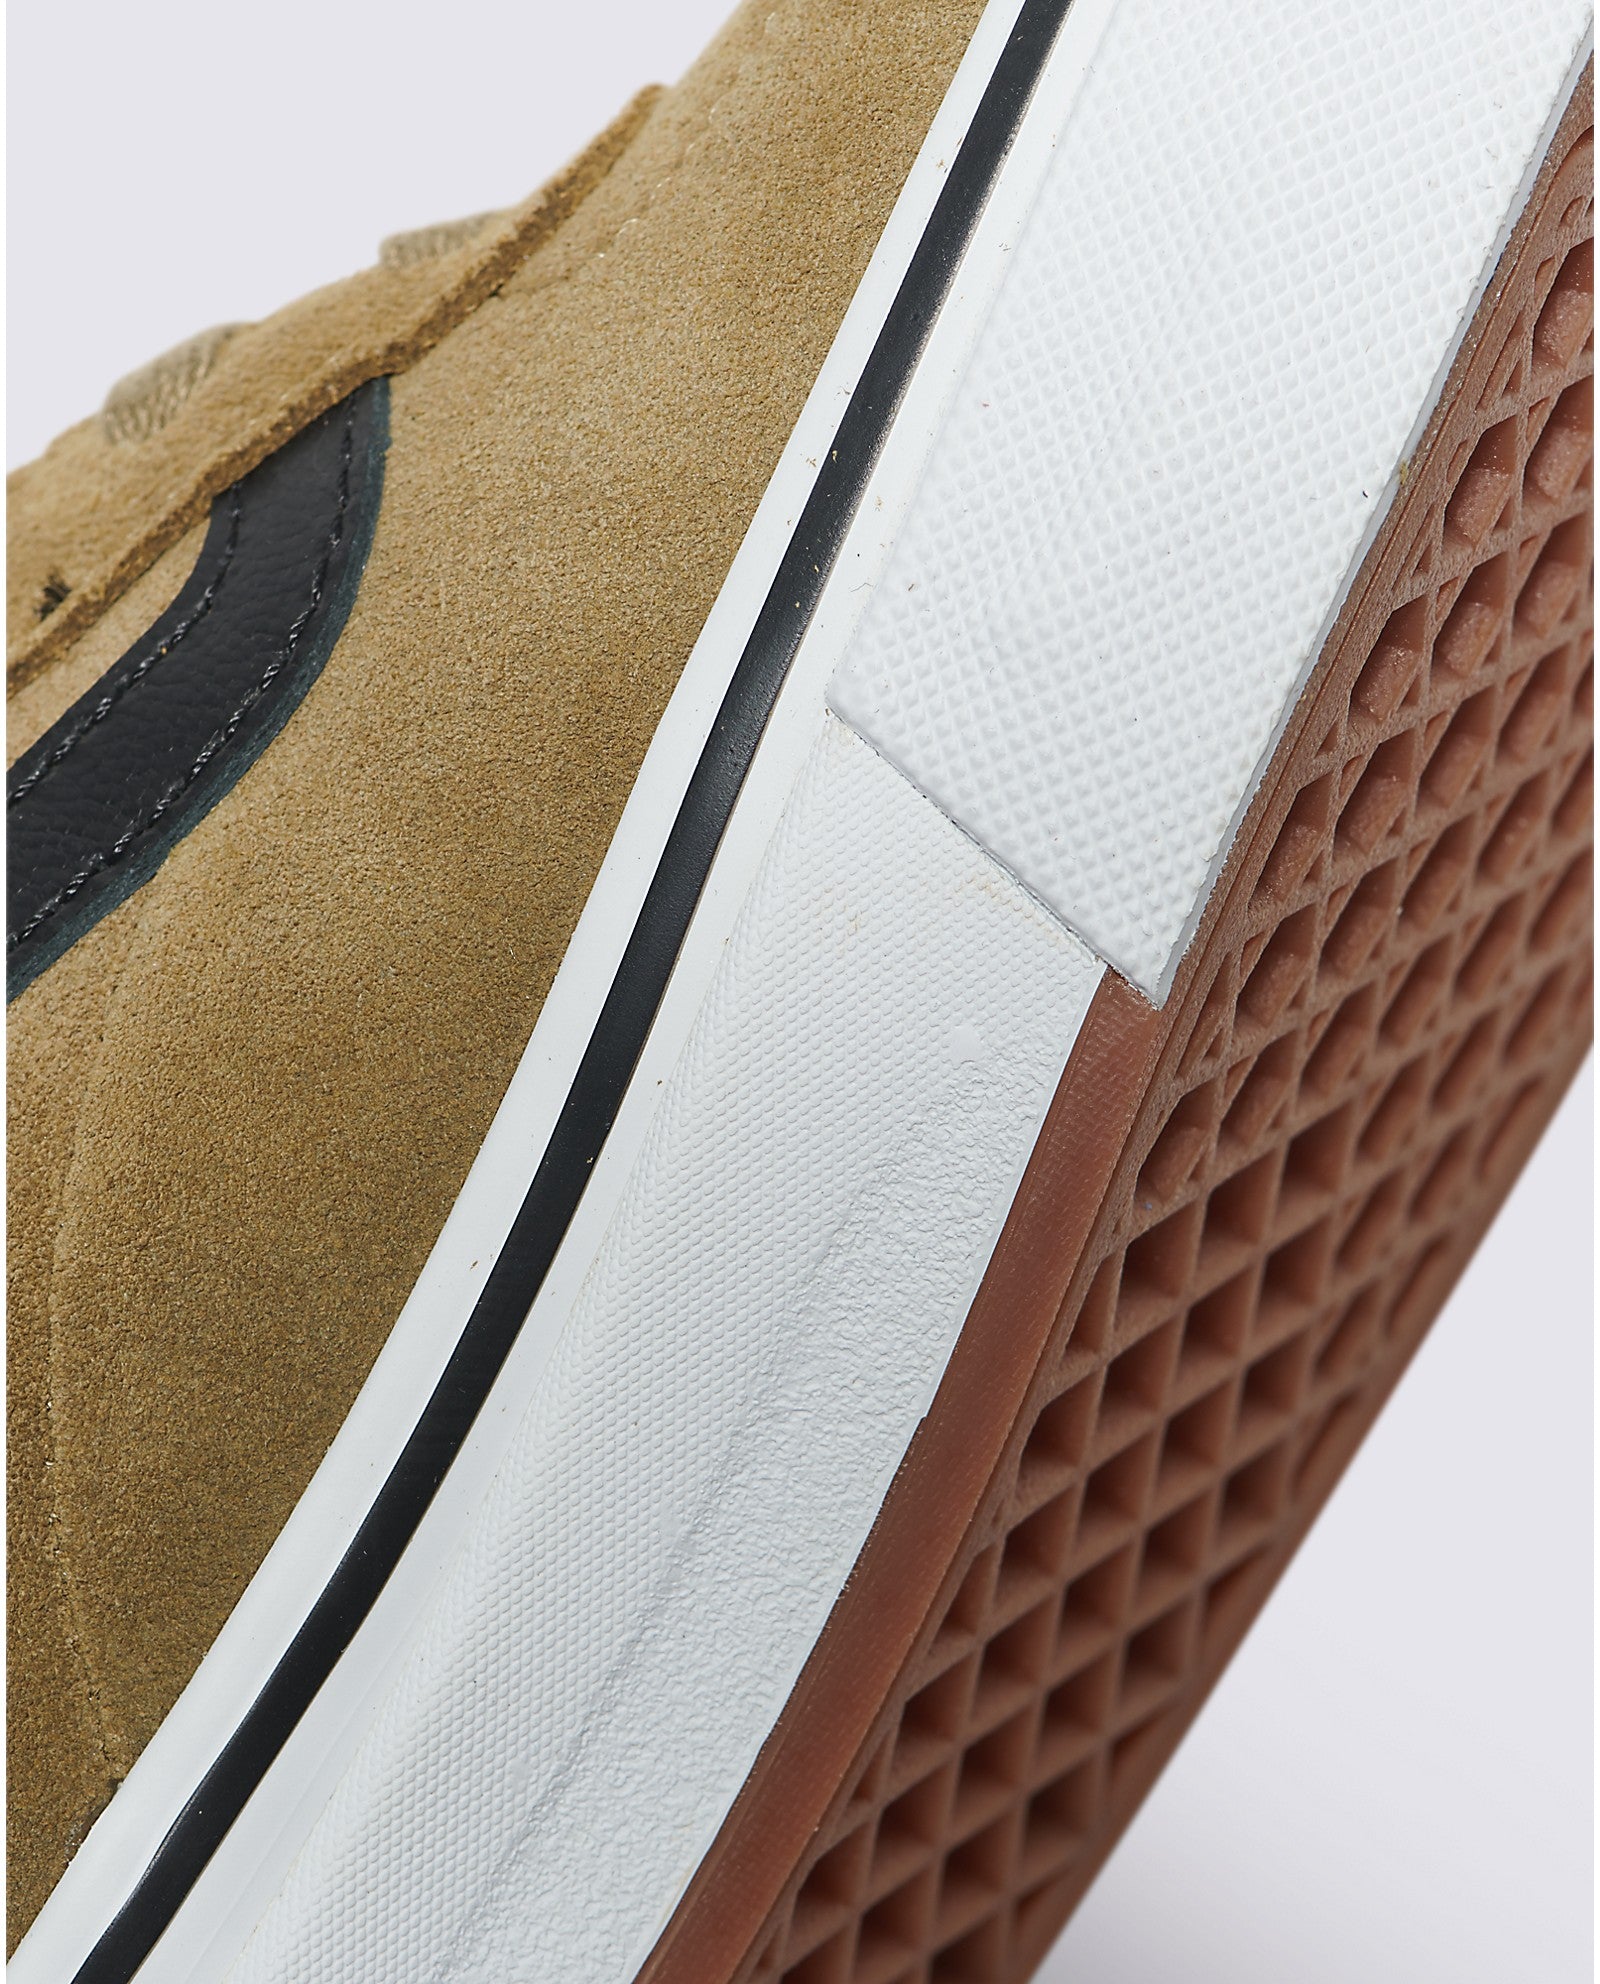 Gothic Olive Kyle Walker Vans Pro Skate Shoe Detail